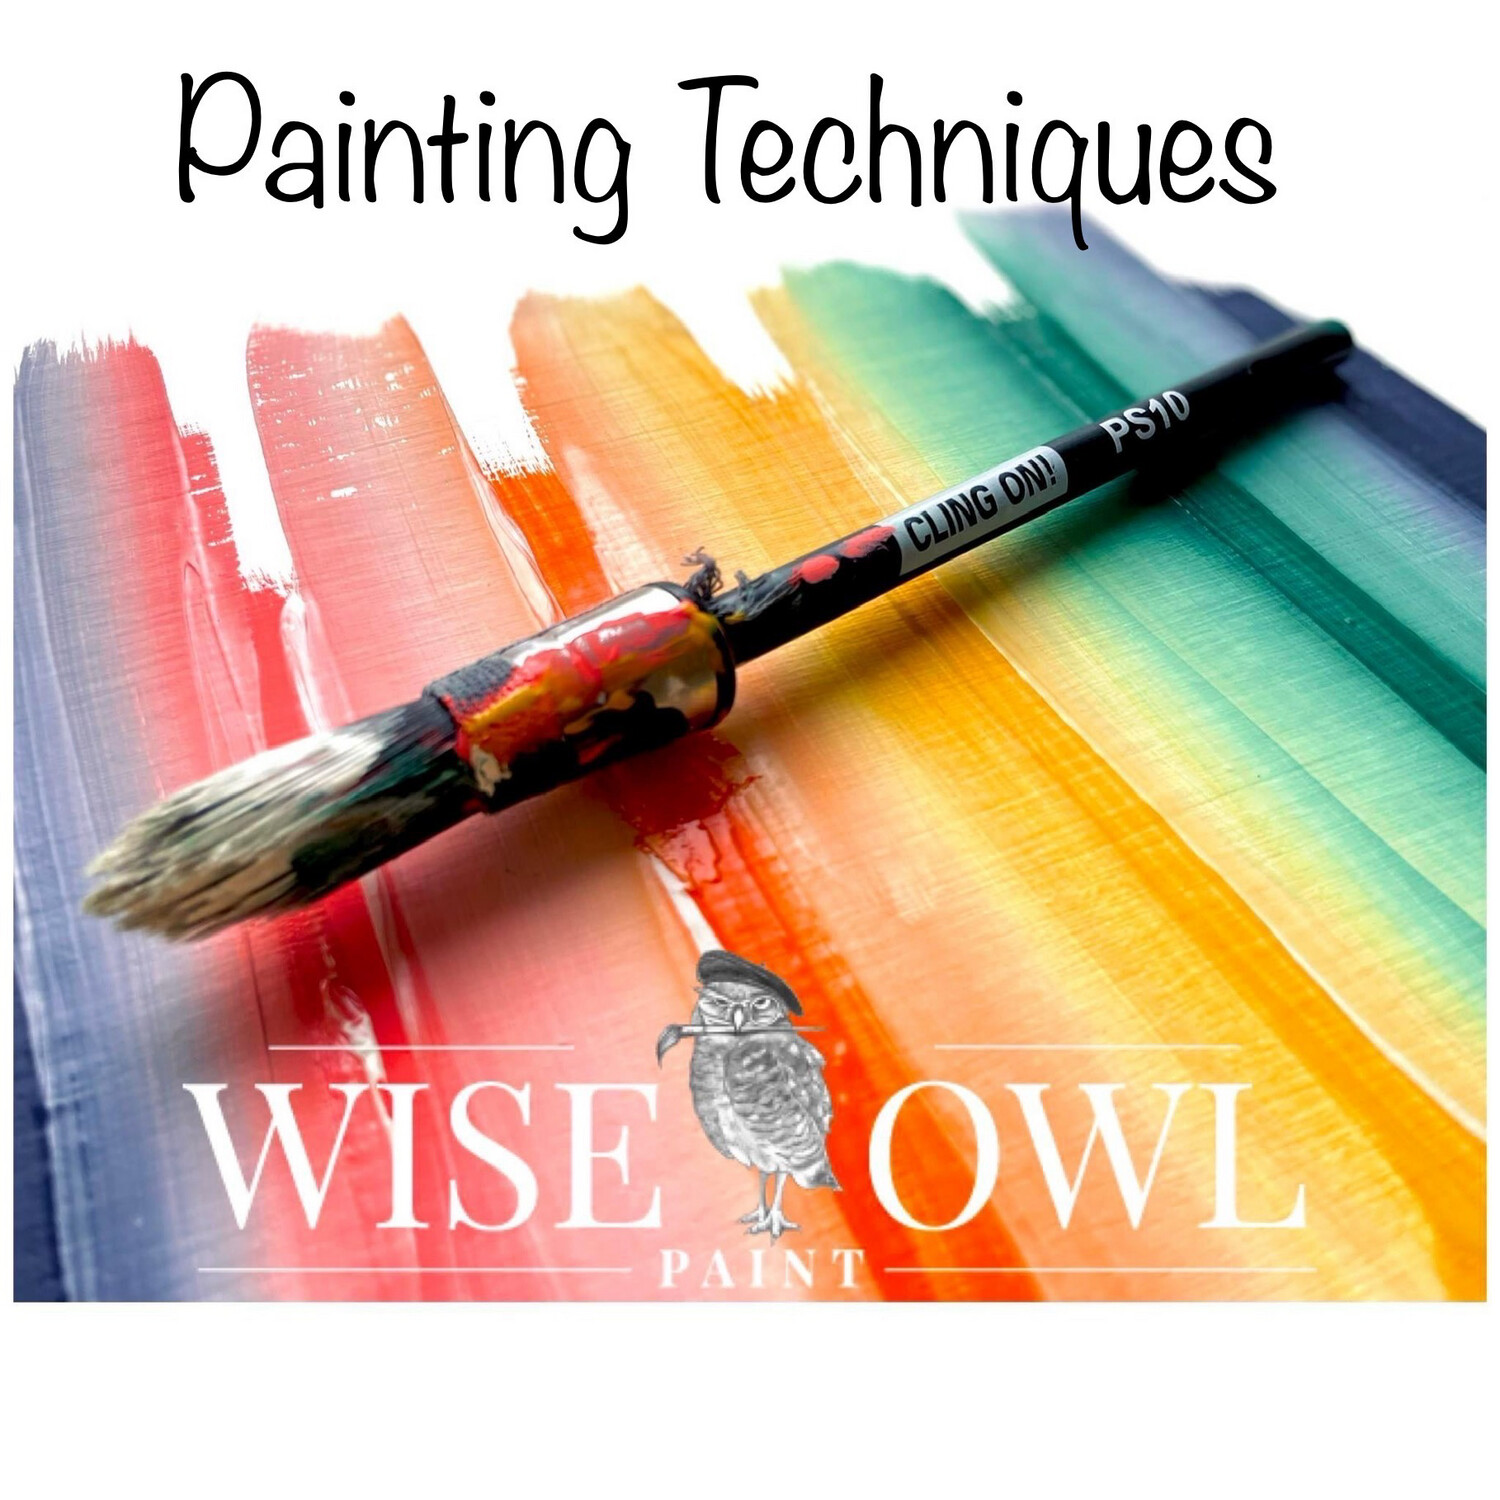 Painting Techniques Workshop June 7th 6-9 pm